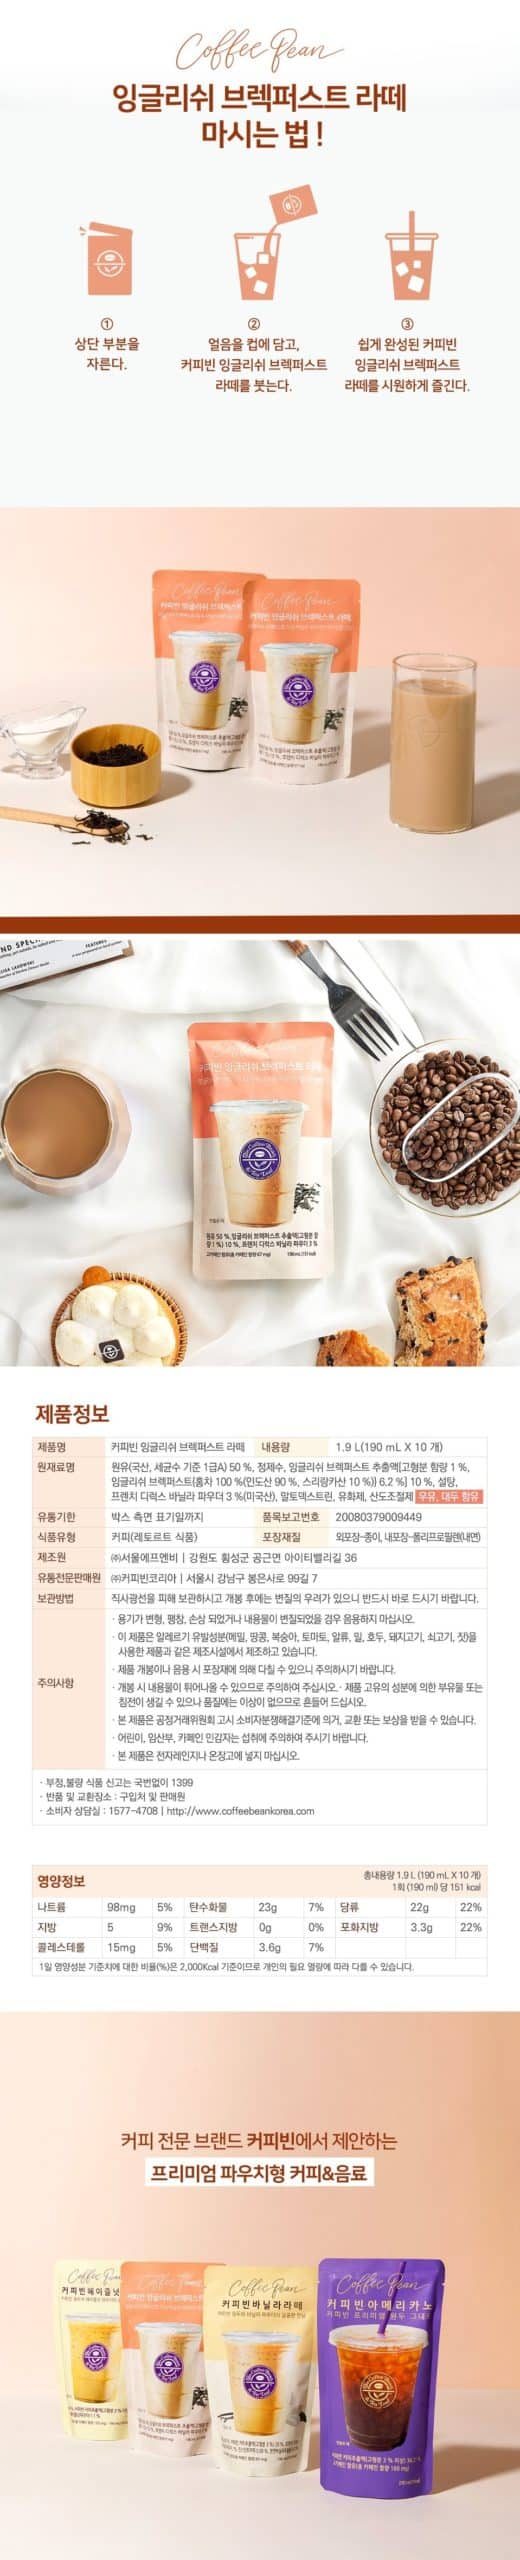 韓國食品-[커피빈] 잉글리쉬 브렉퍼스트 라떼 190ml